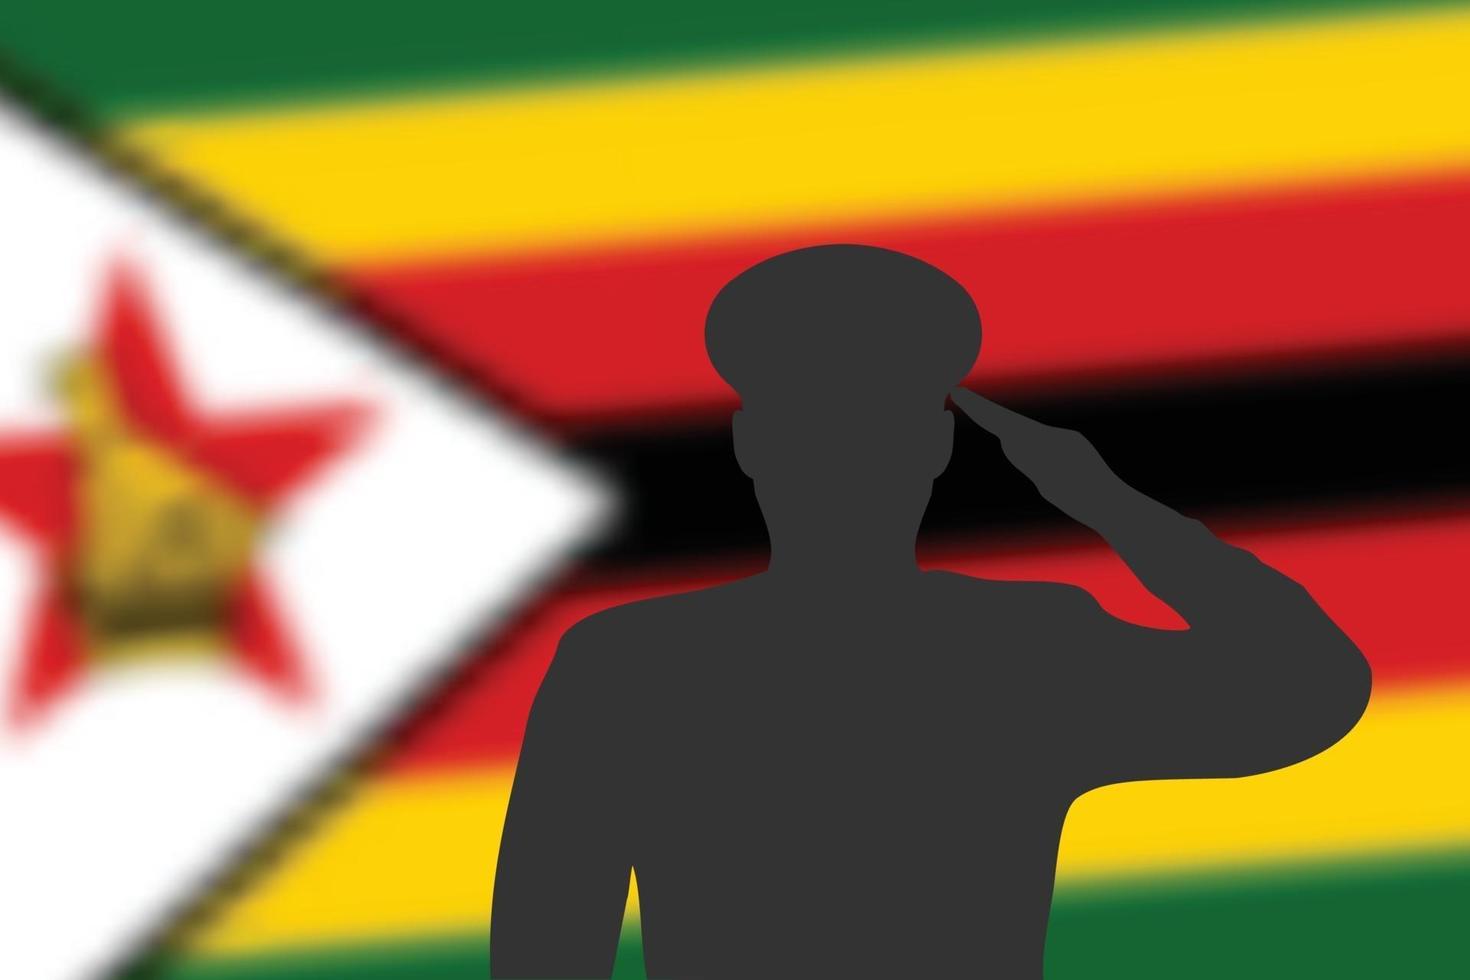 Lötsilhouette auf Unschärfehintergrund mit Simbabwe-Flagge. vektor